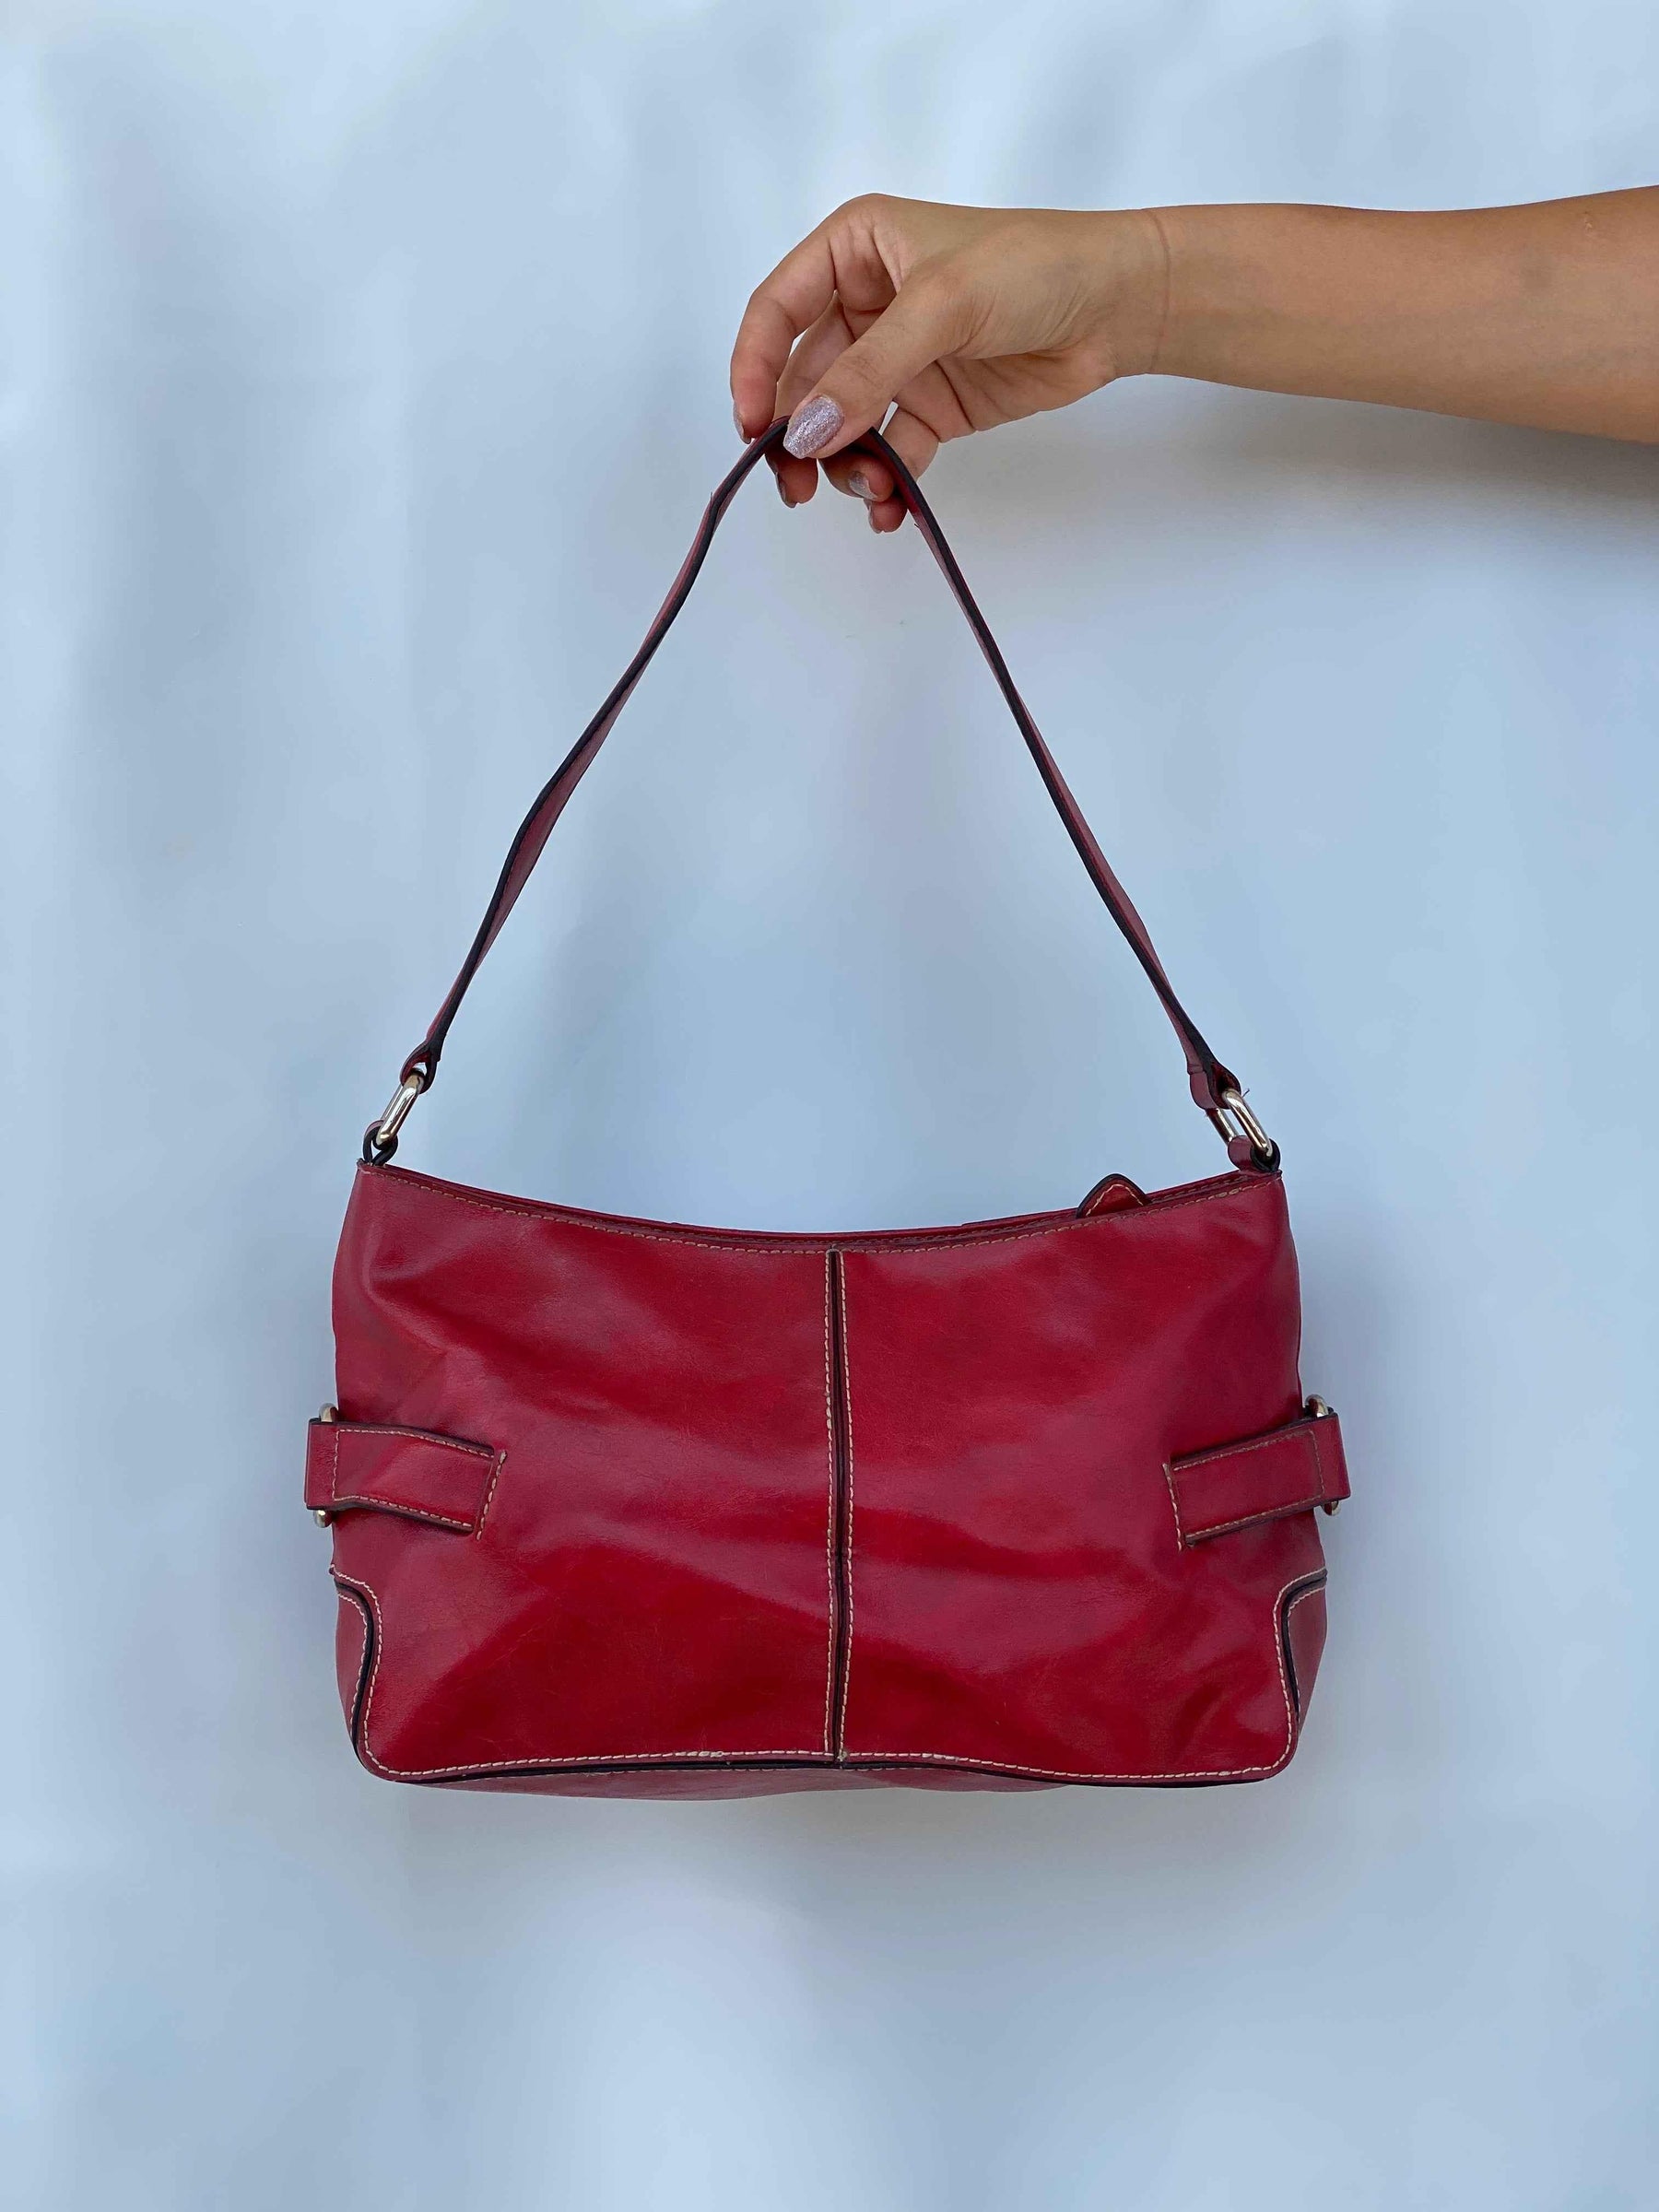 Red Leather handbag with shoulder strap